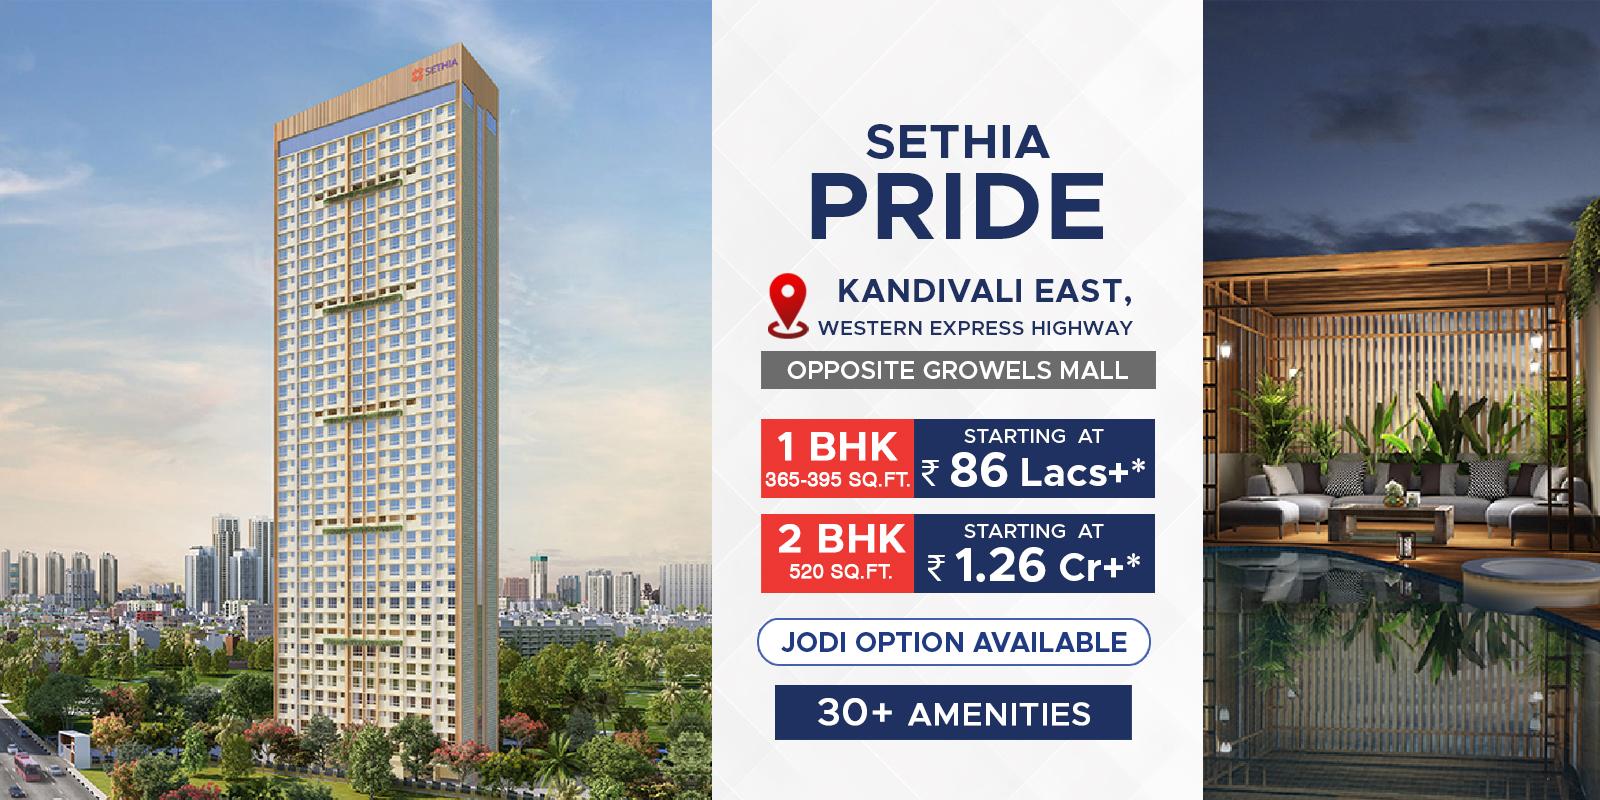 Sethia Pride Kandivali East-sethia-pride-banner.jpg